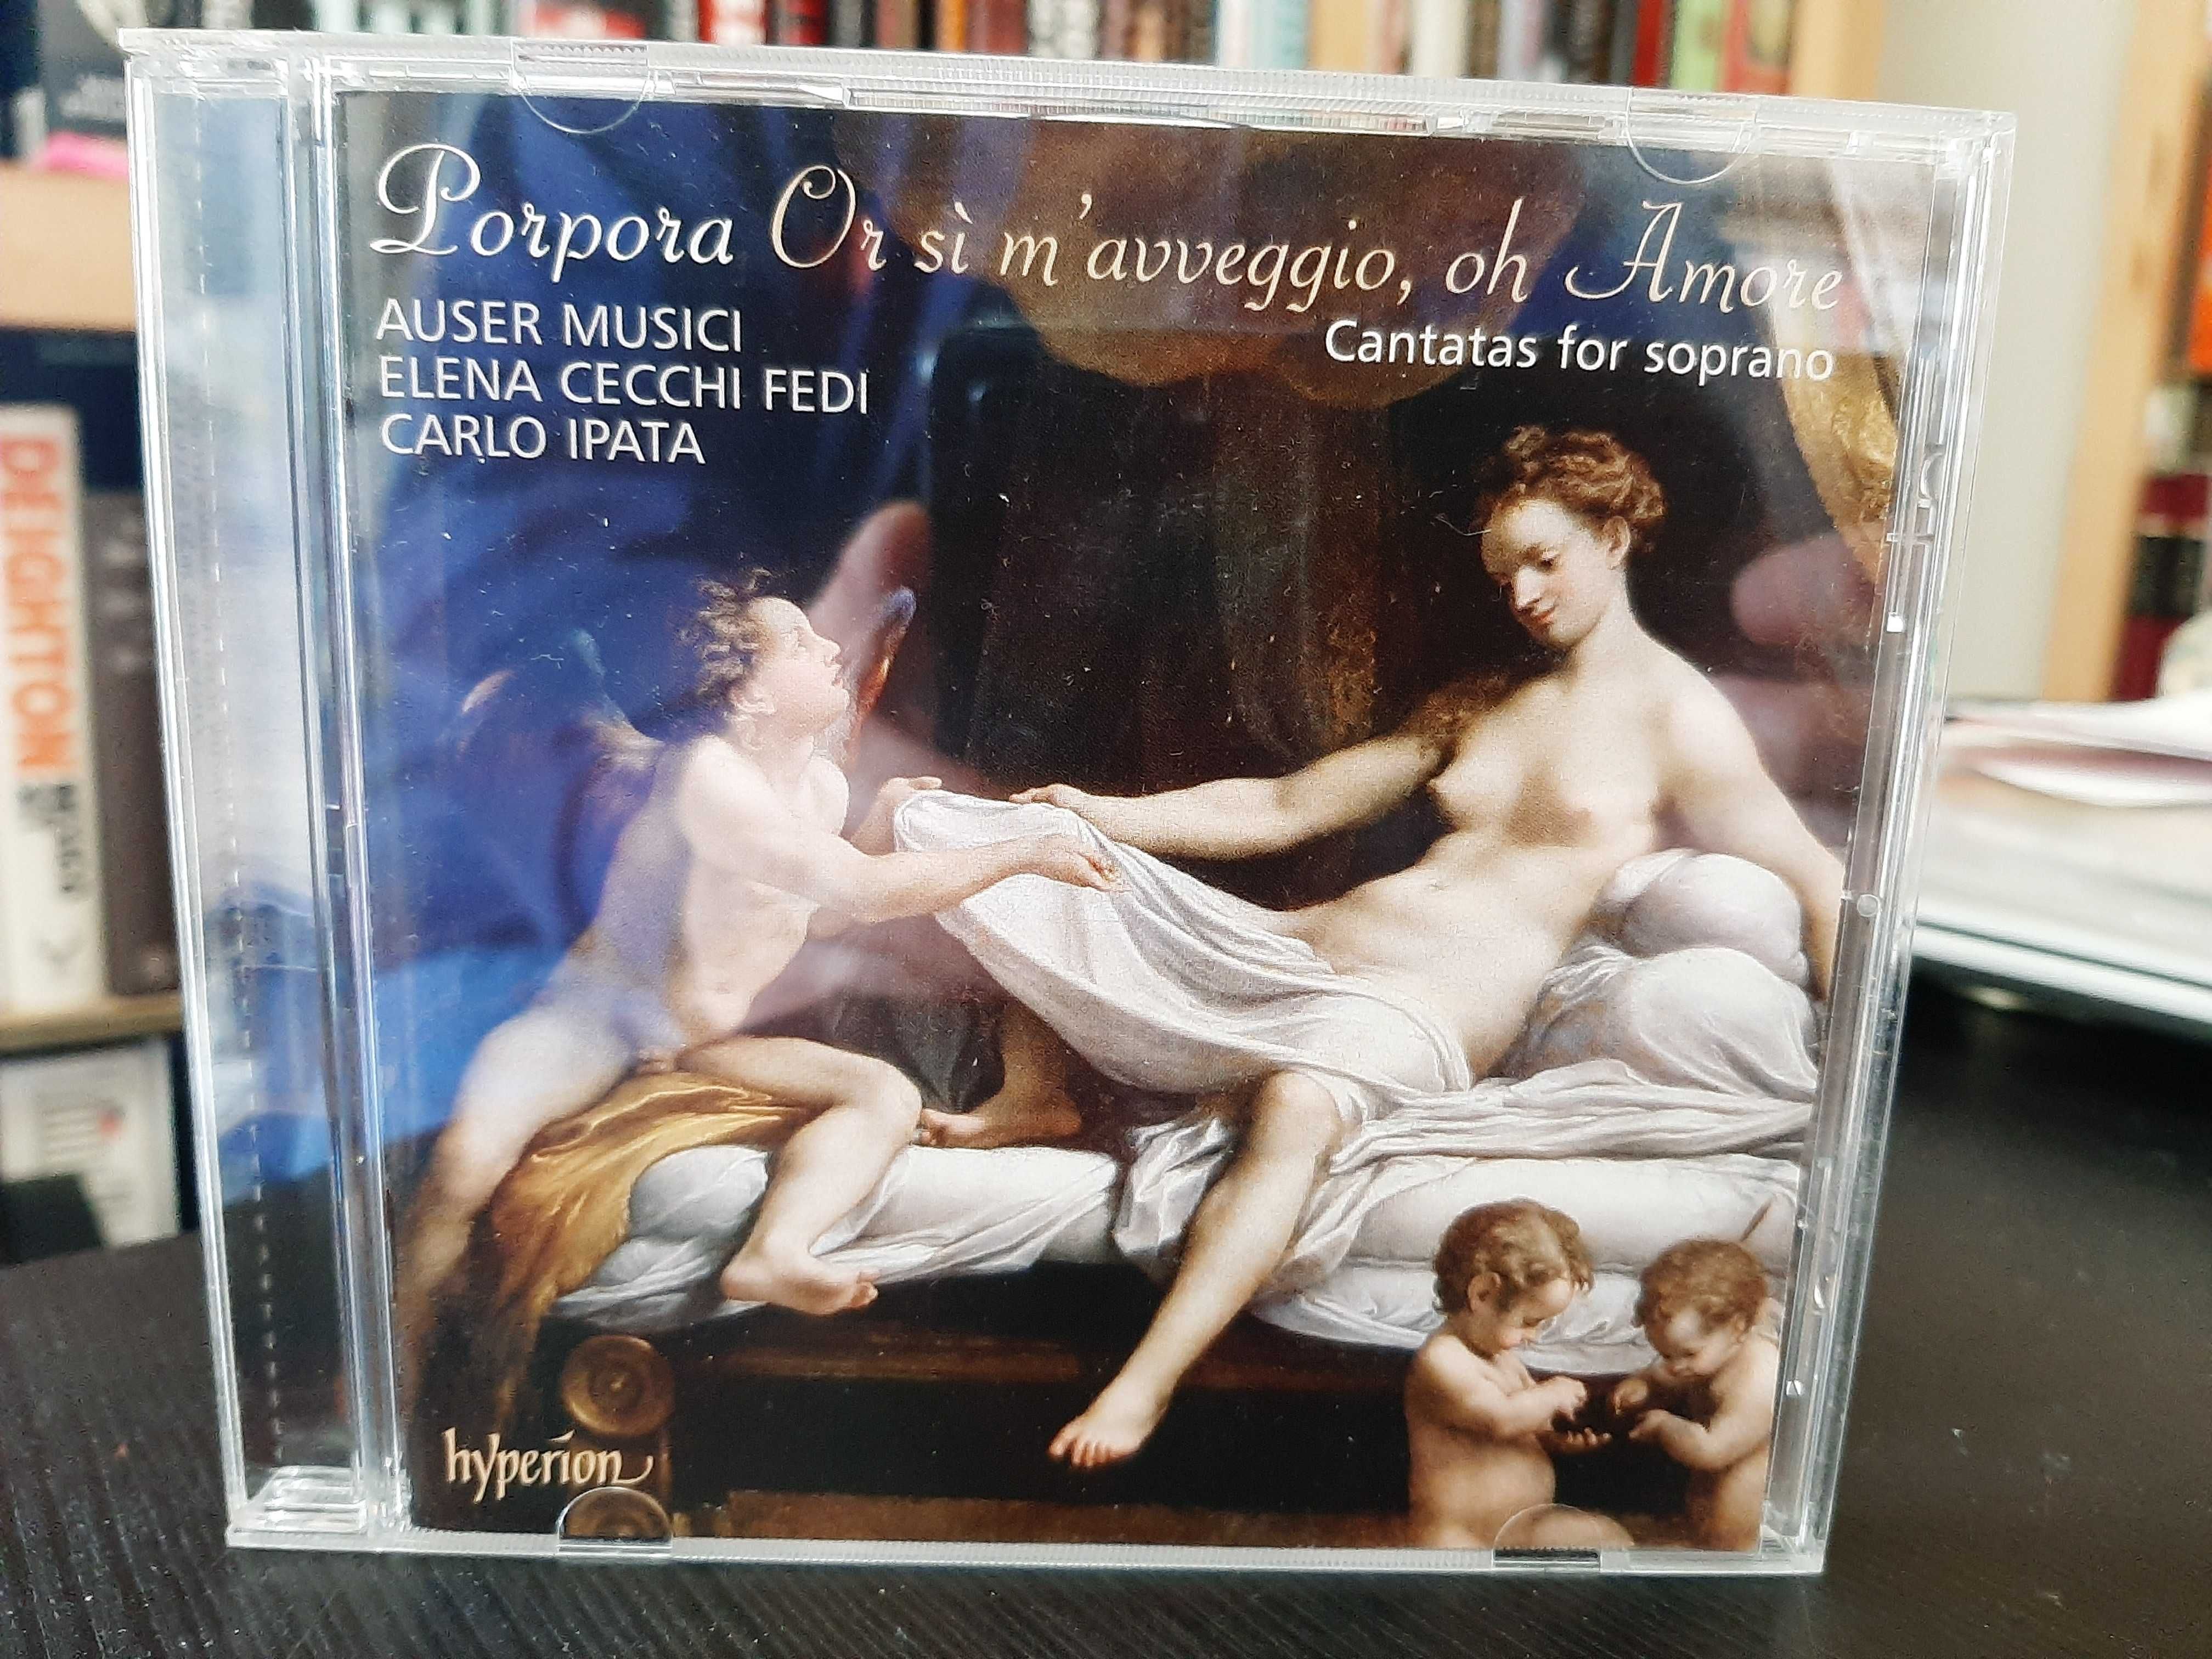 Porpora – Cantatas for soprano – Auser Musici, Carlo Ipata